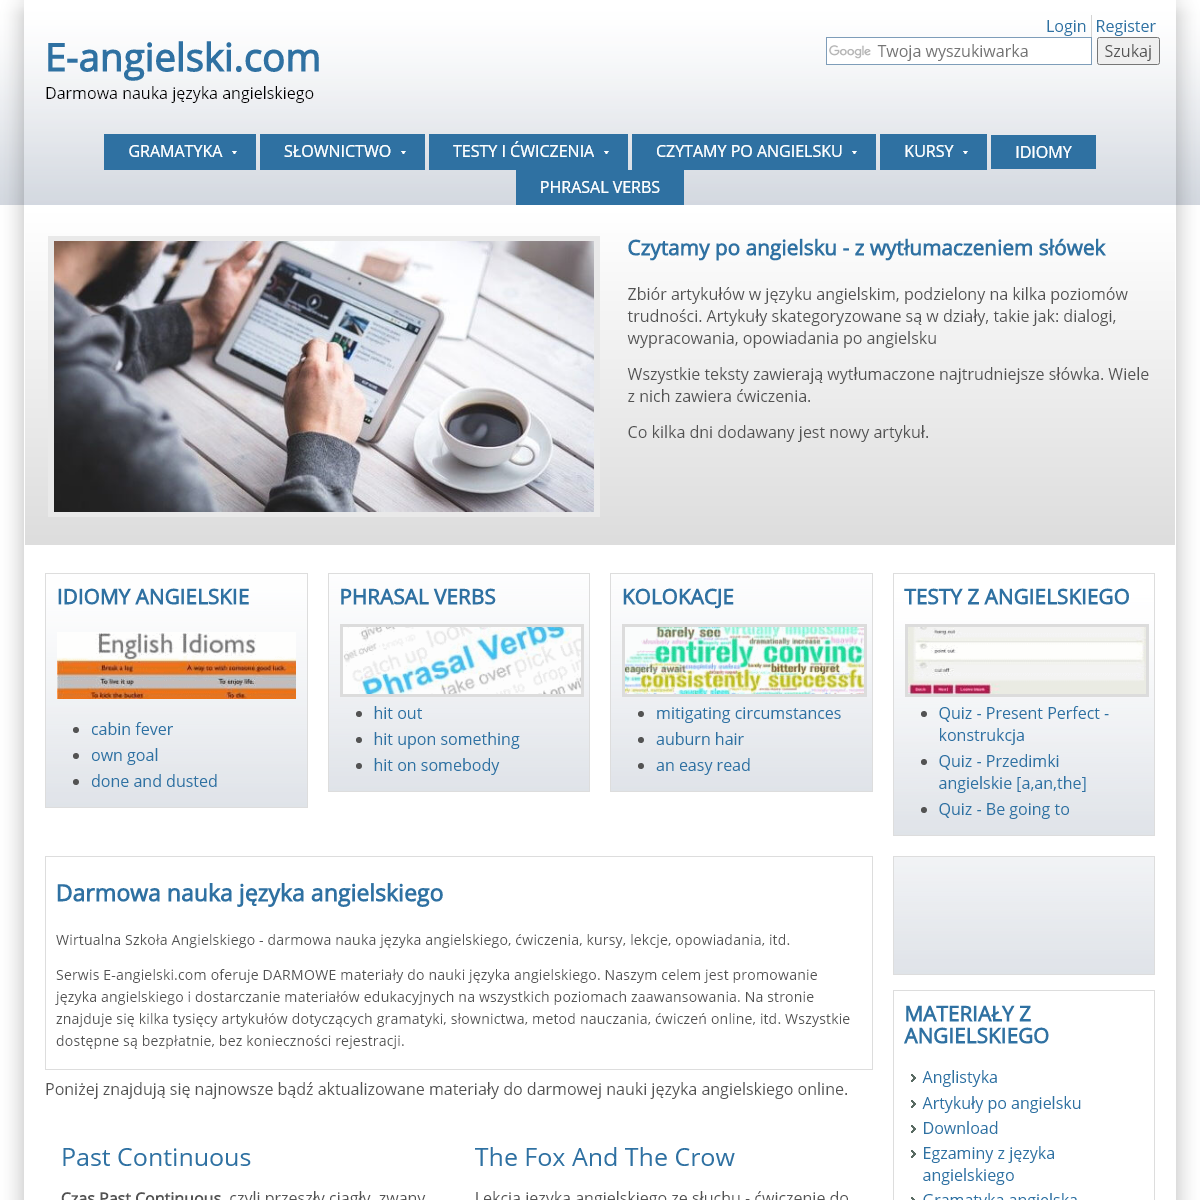 A complete backup of e-angielski.com